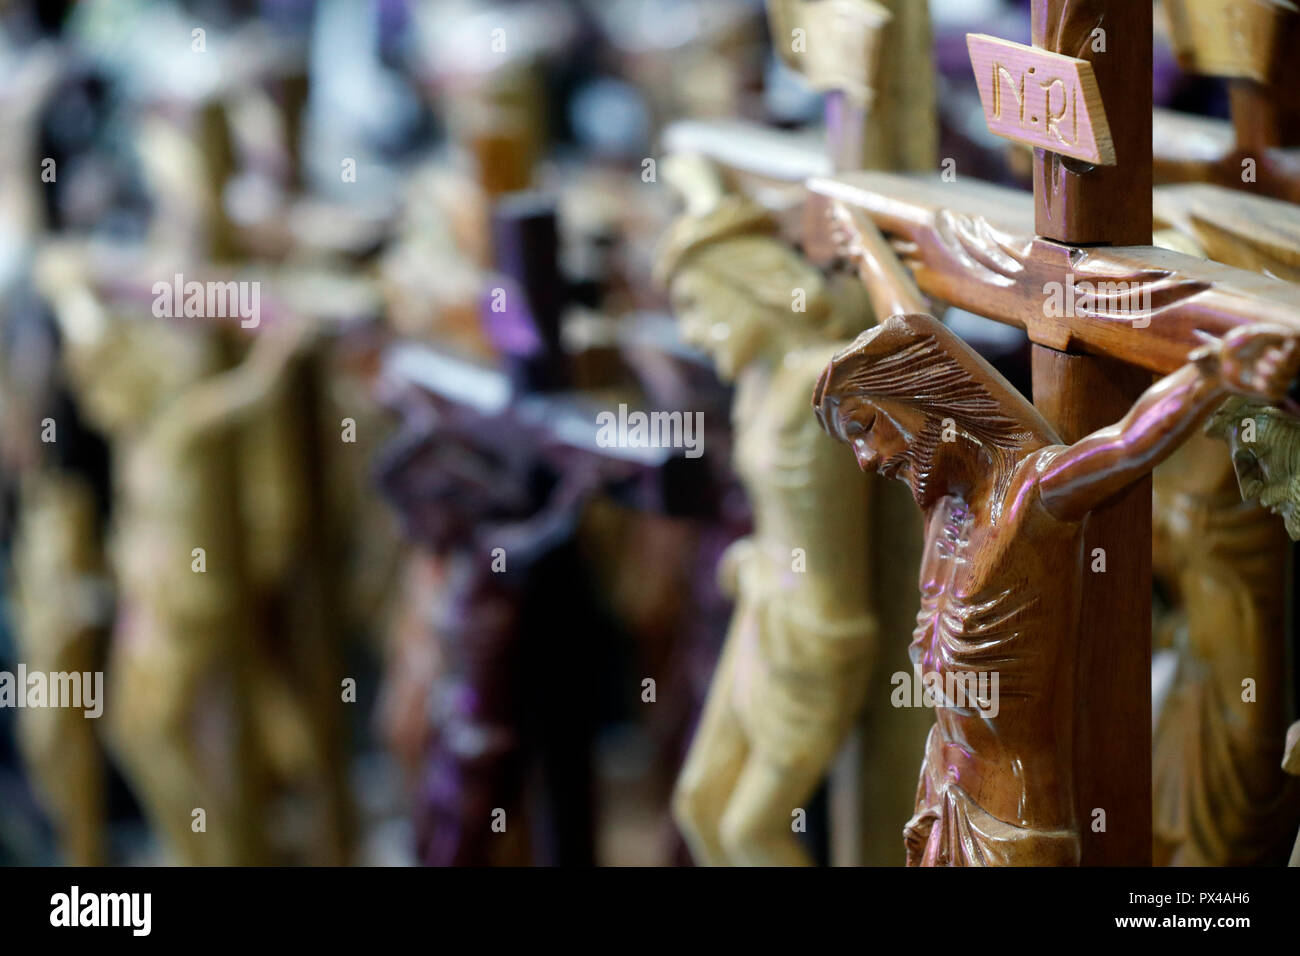 Tienda de venta de artículos religiosos cristianos. Estatuas de Jesús en la cruz. Ho Chi Minh City. Vietnam. Foto de stock